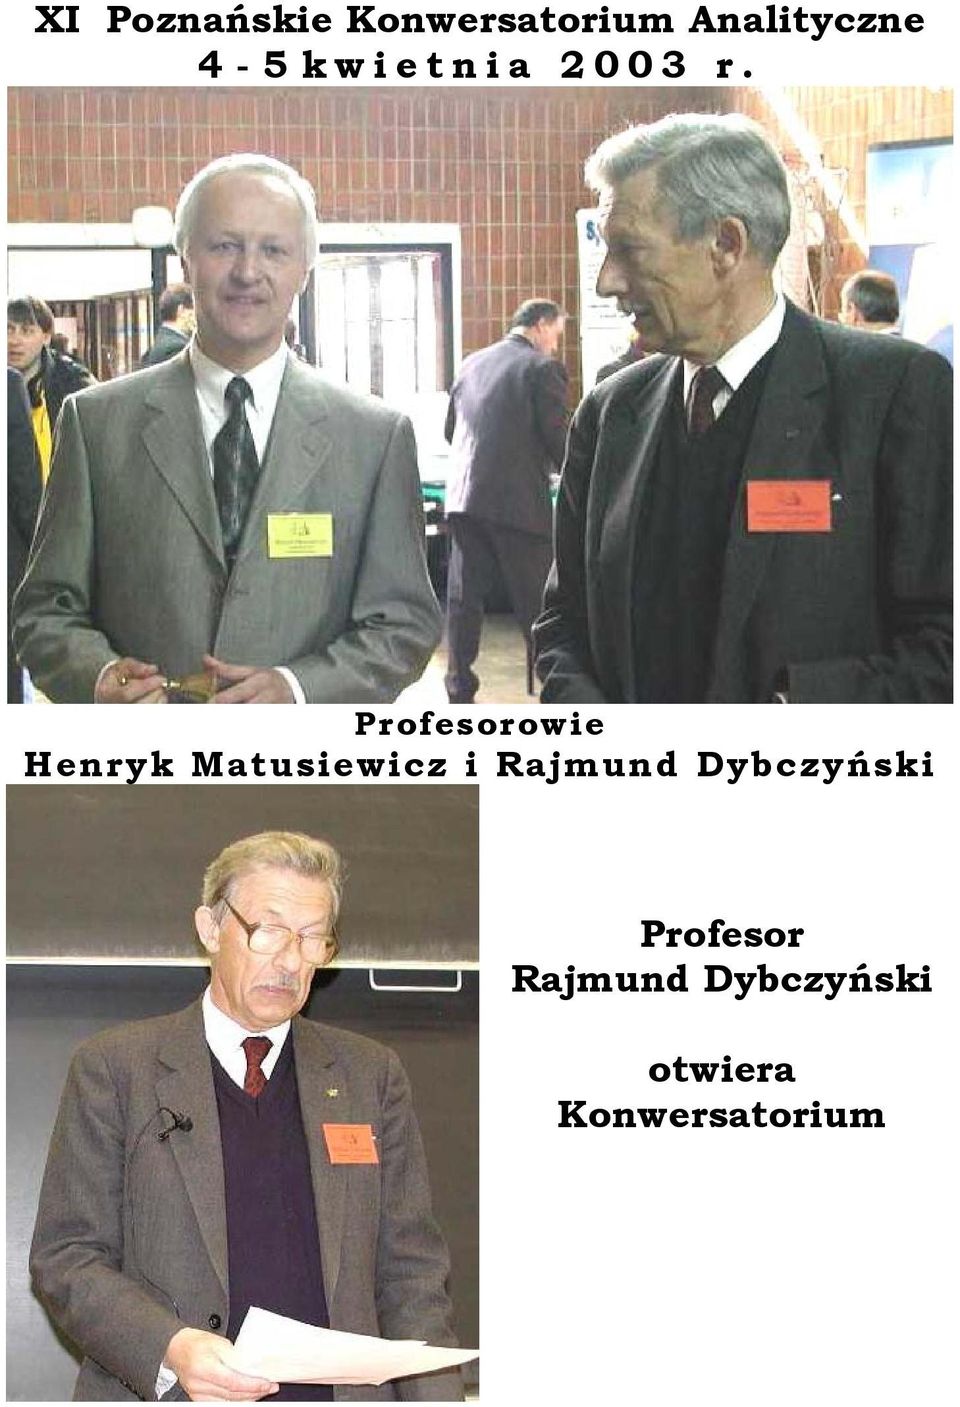 Profesorowie Henryk Matusiewicz i Rajmund